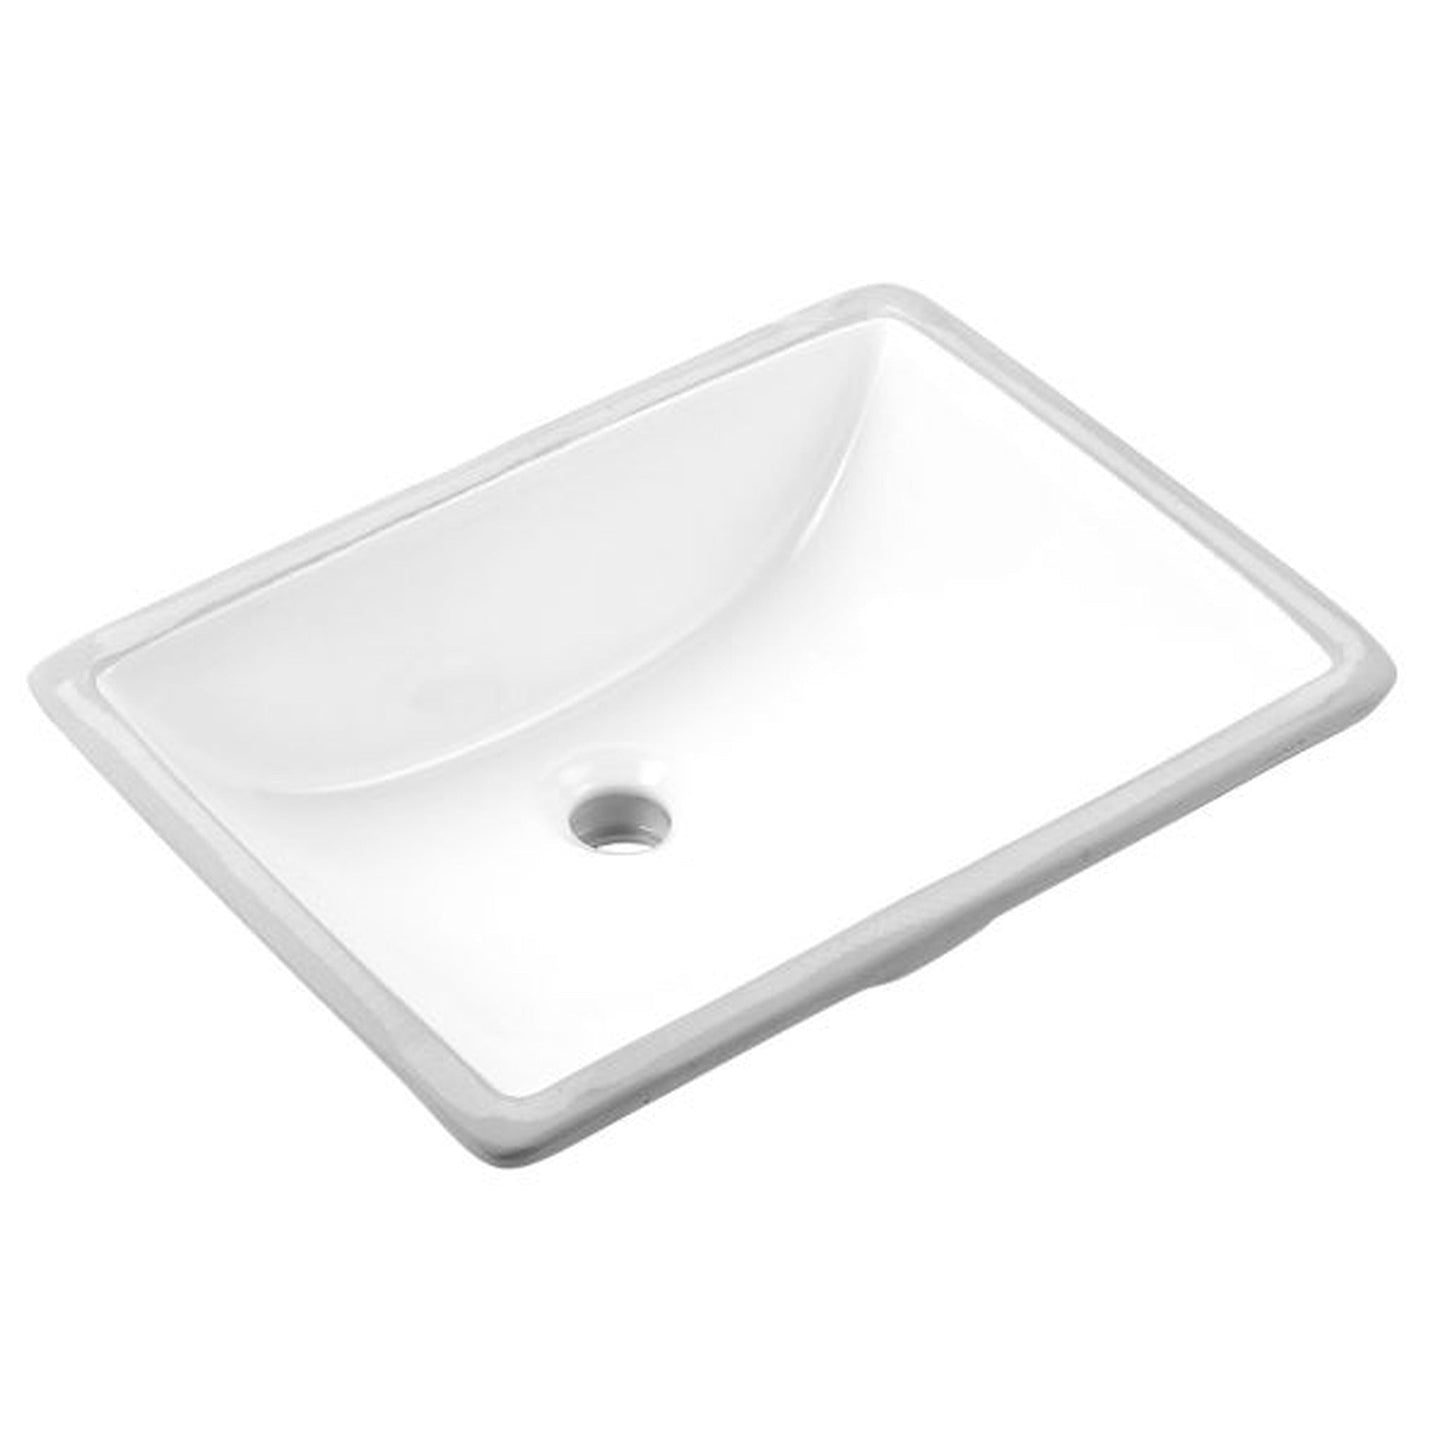 Ratel 44" x 23" White Quartz Vanity Top With Single Undermount Sink